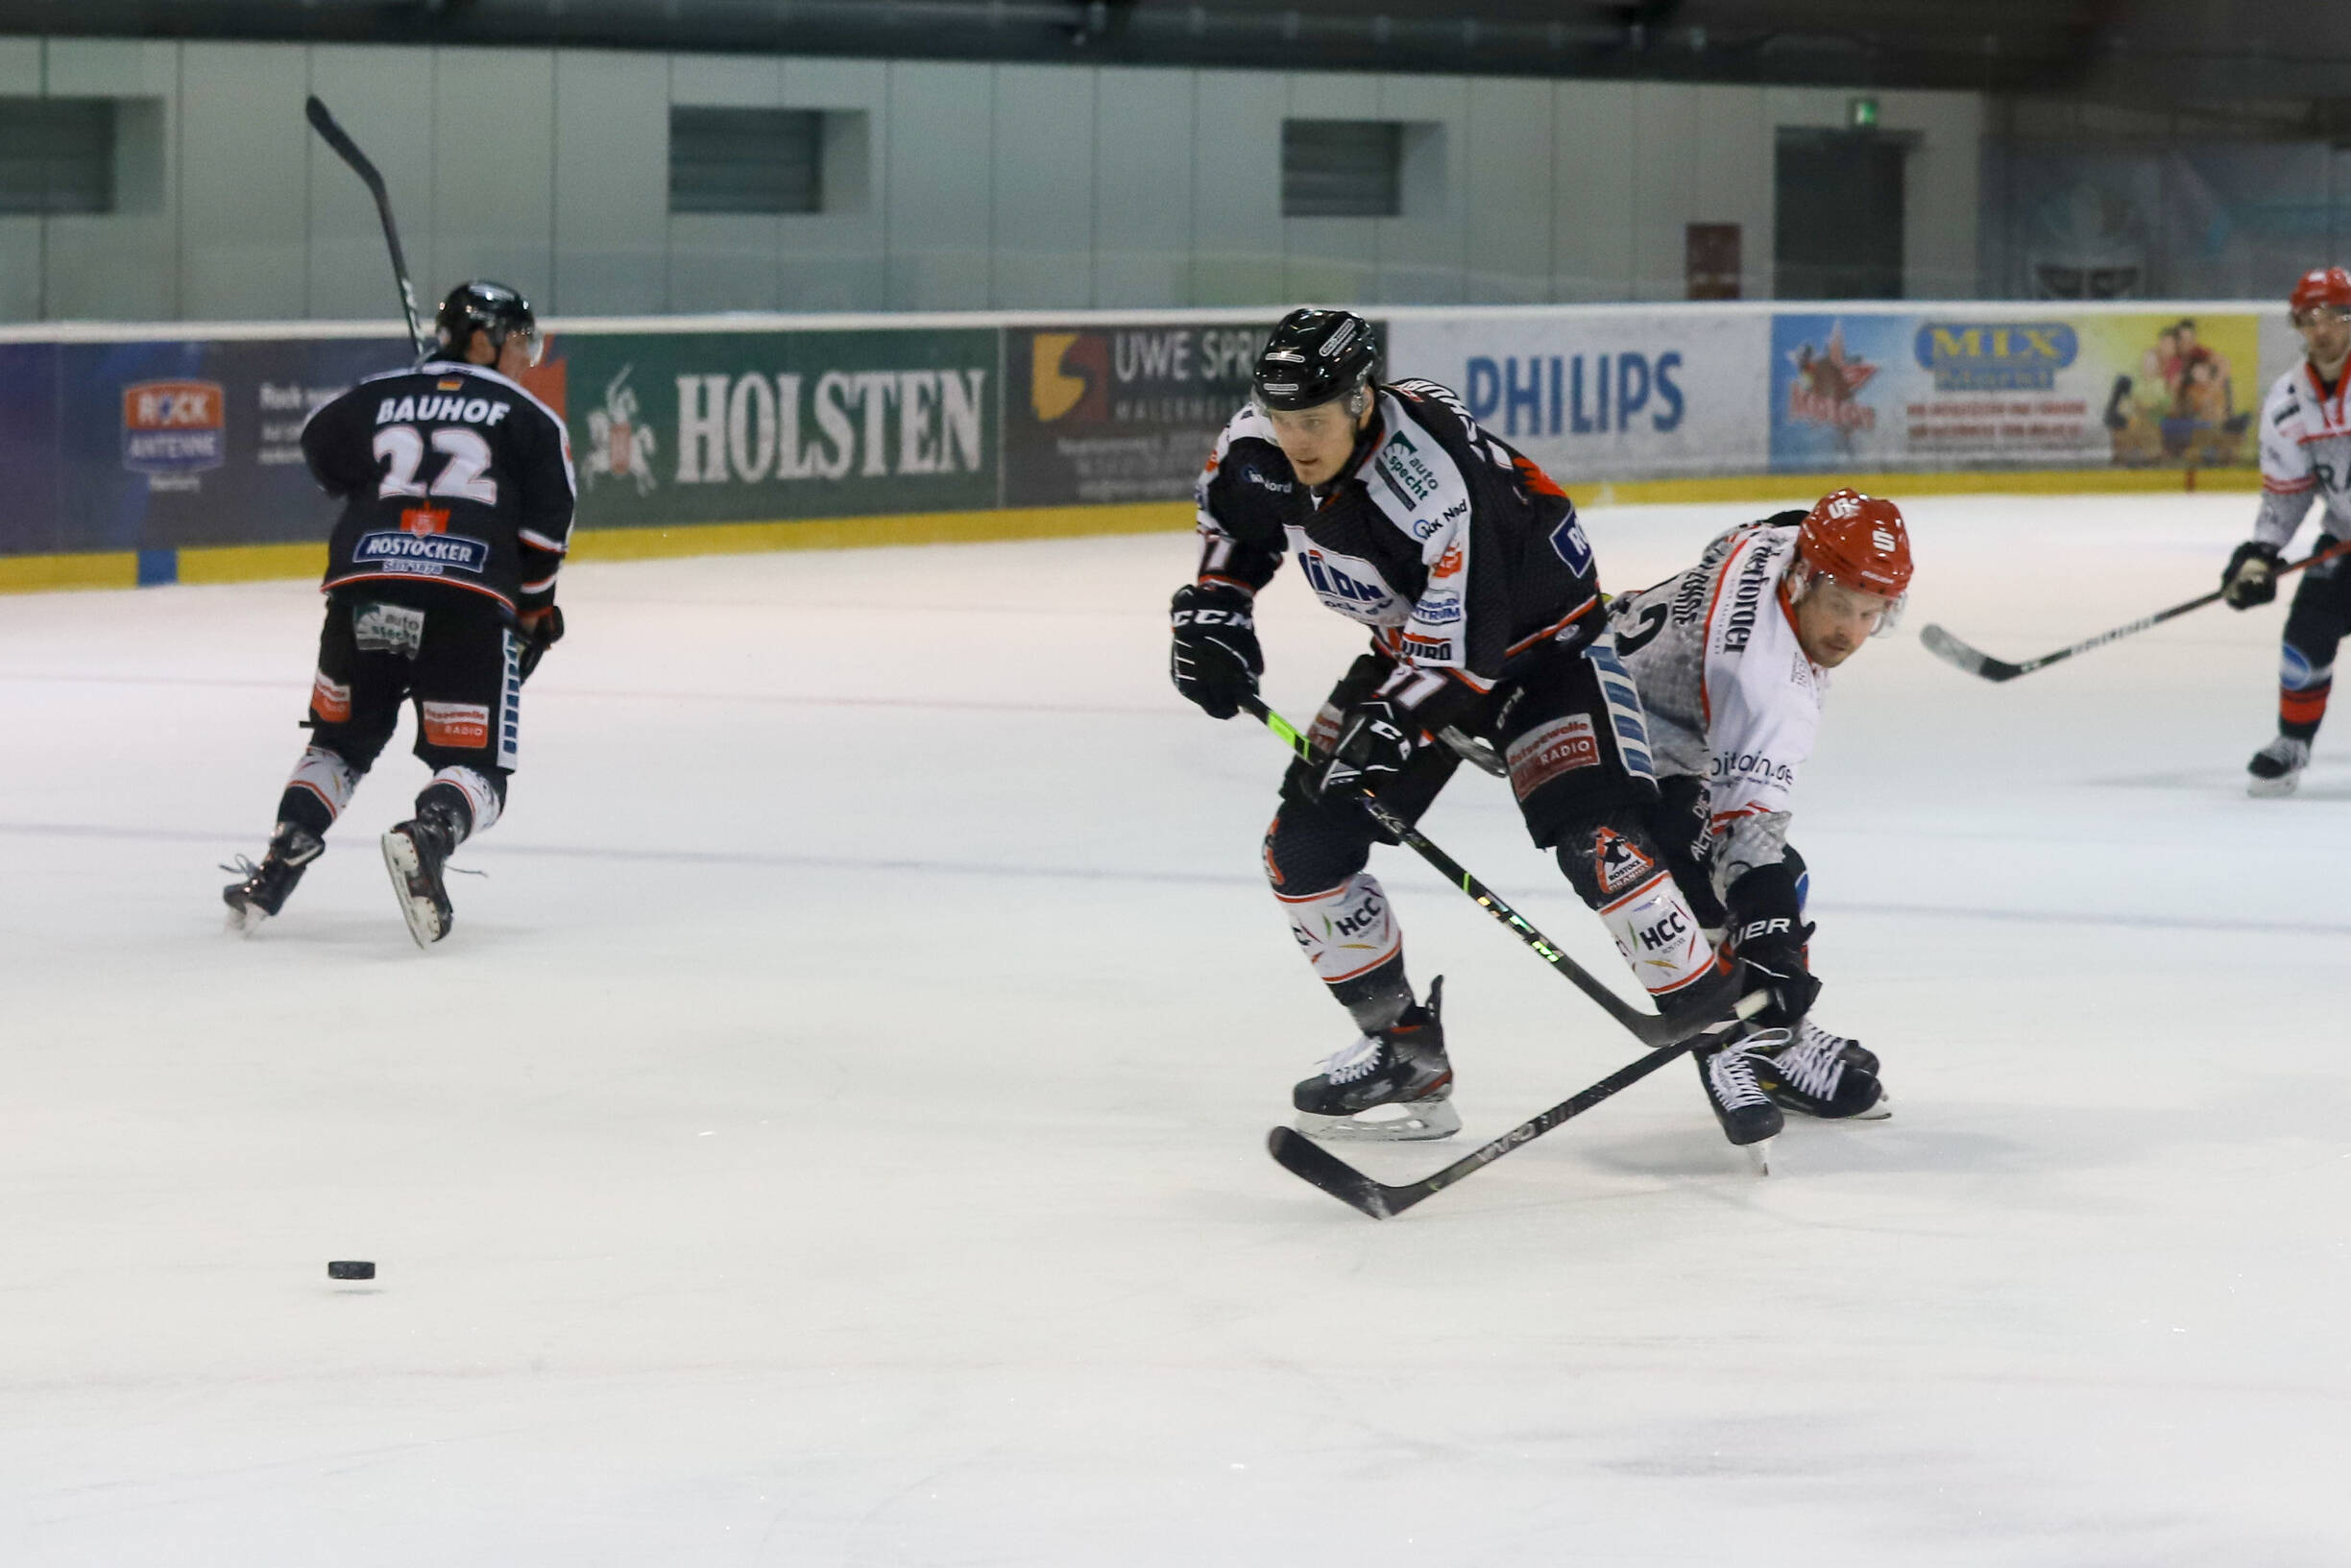 Eishockey-Spiel in der q.beyond Arena in Hamburg